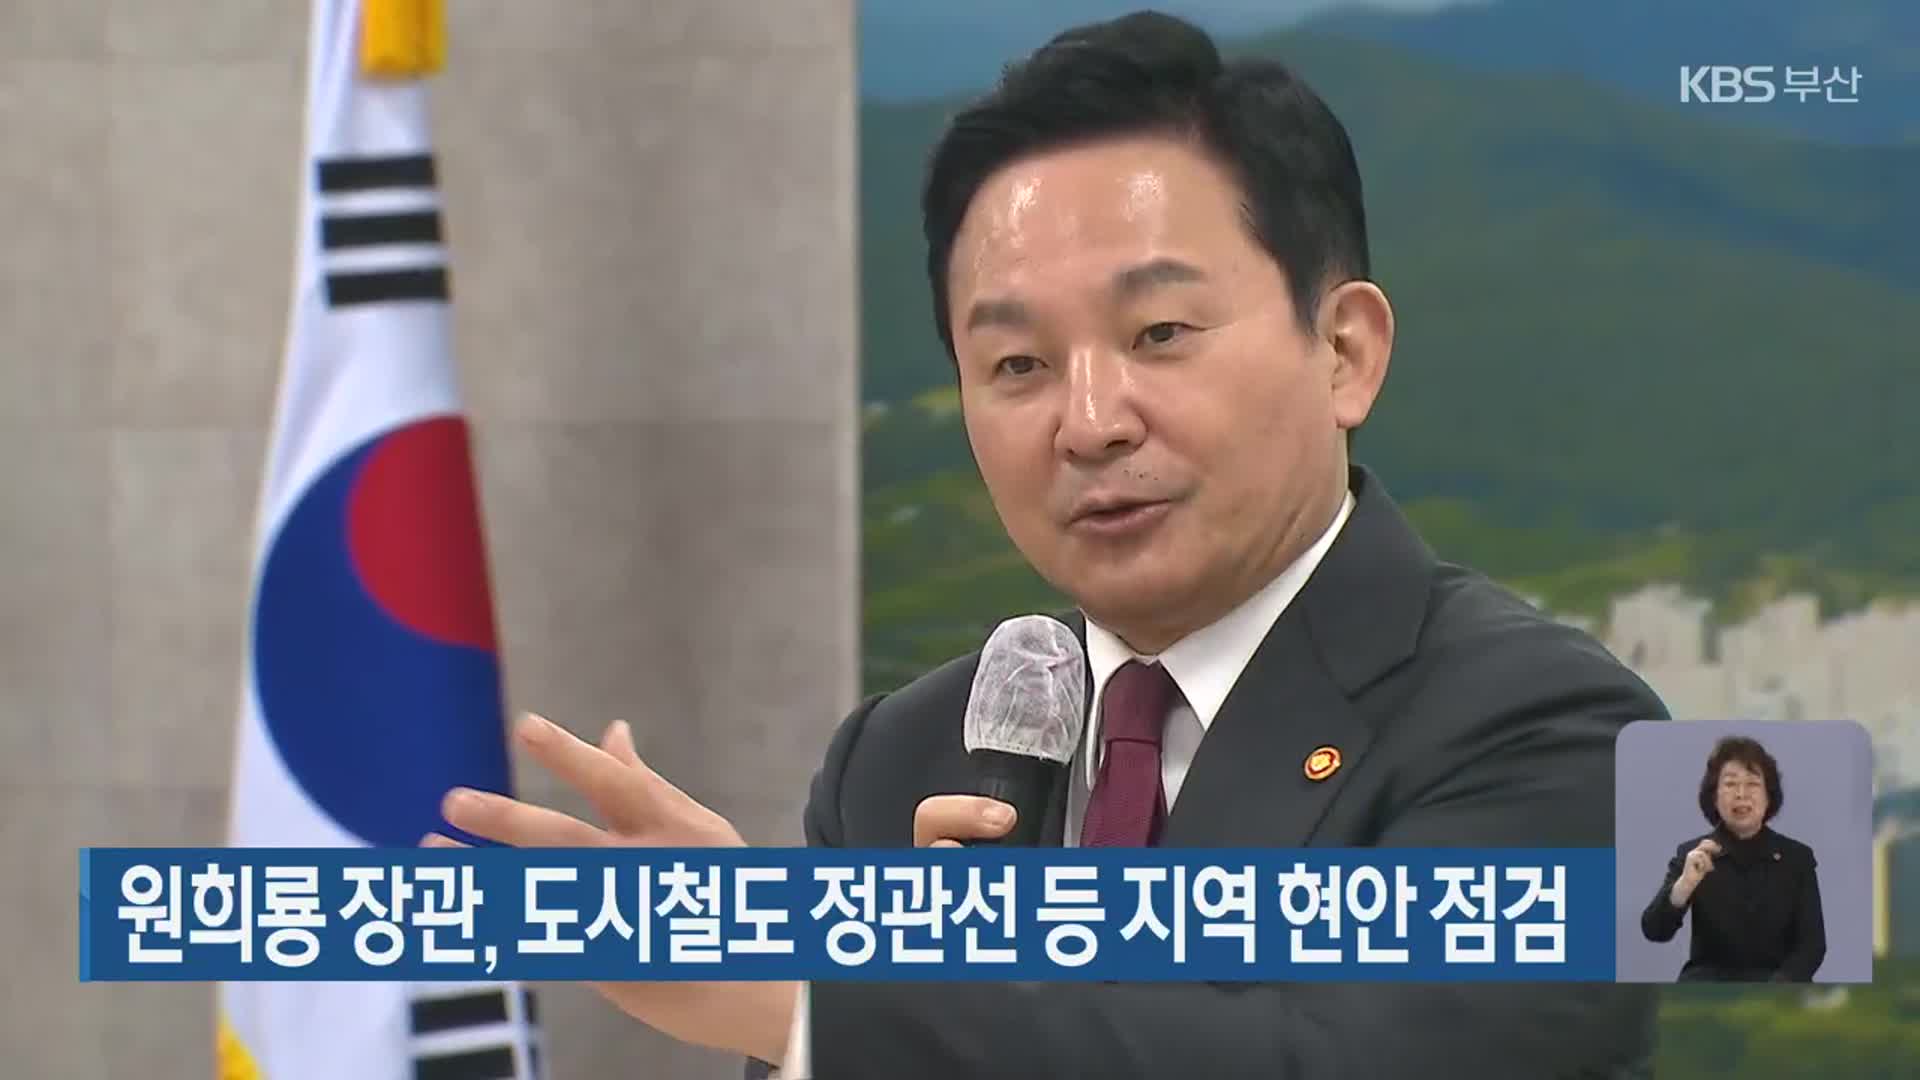 원희룡 장관, 도시철도 정관선 등 지역 현안 점검